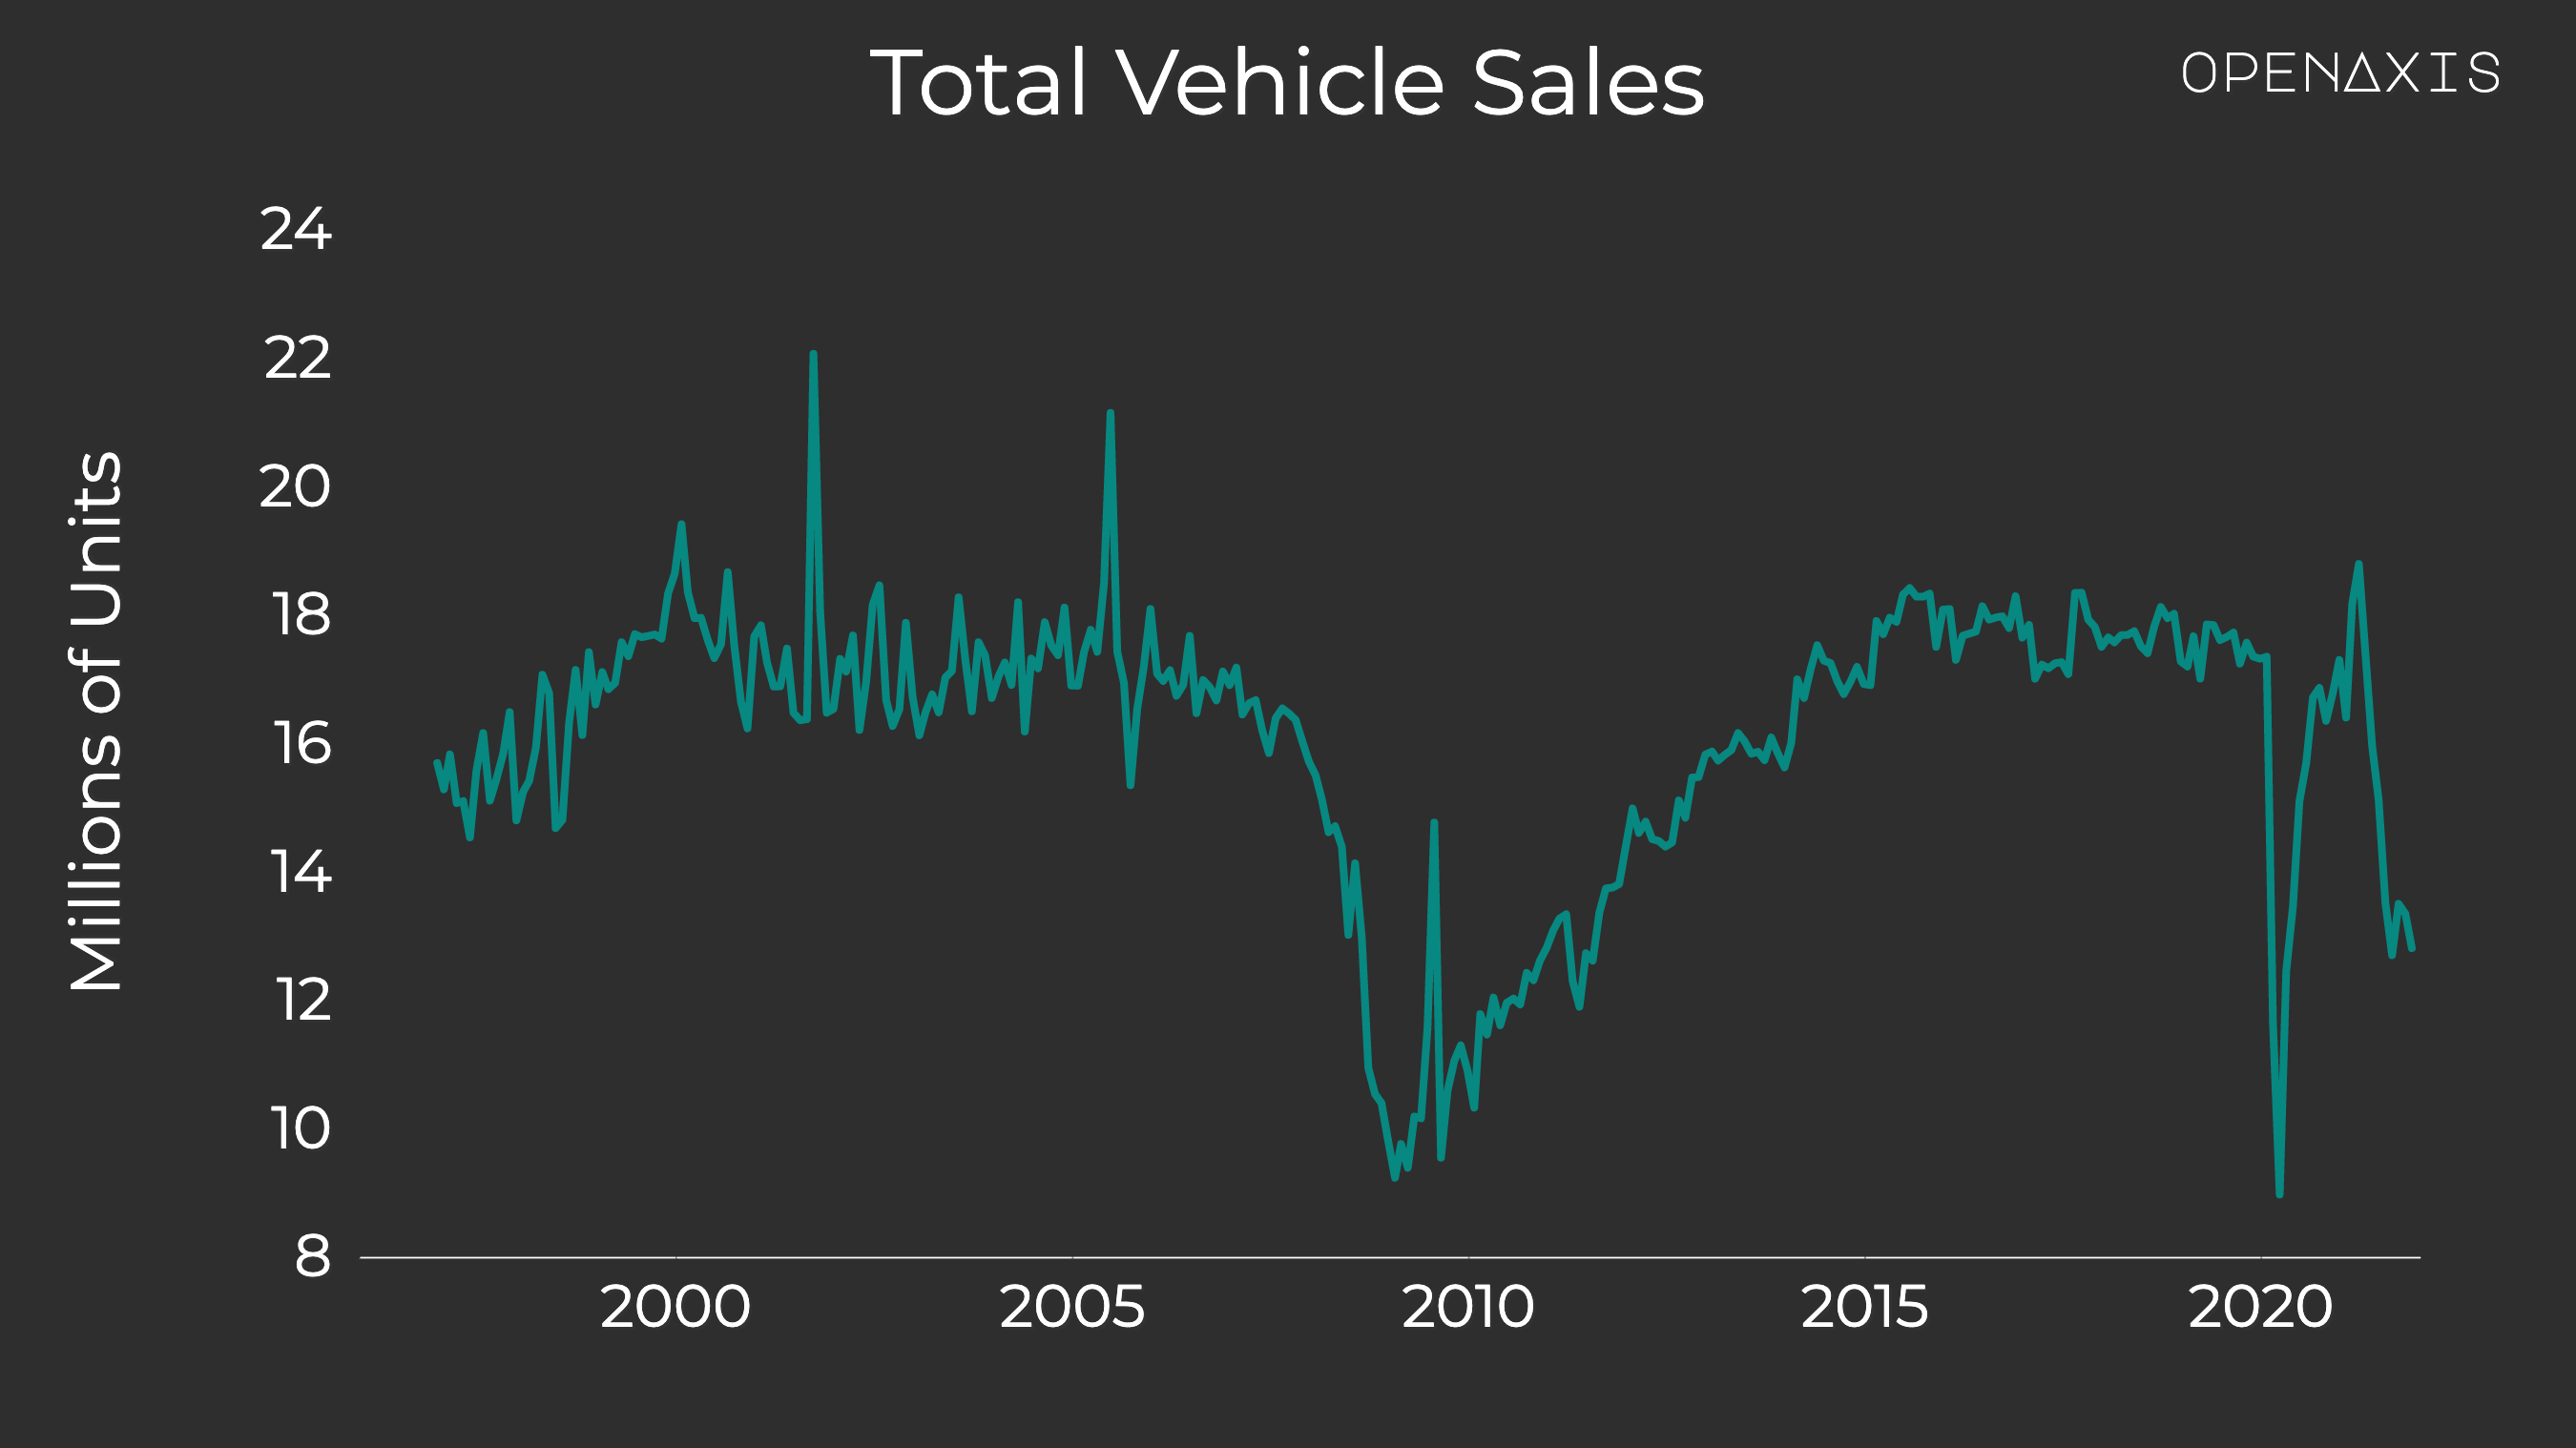 "Total Vehicle Sales"